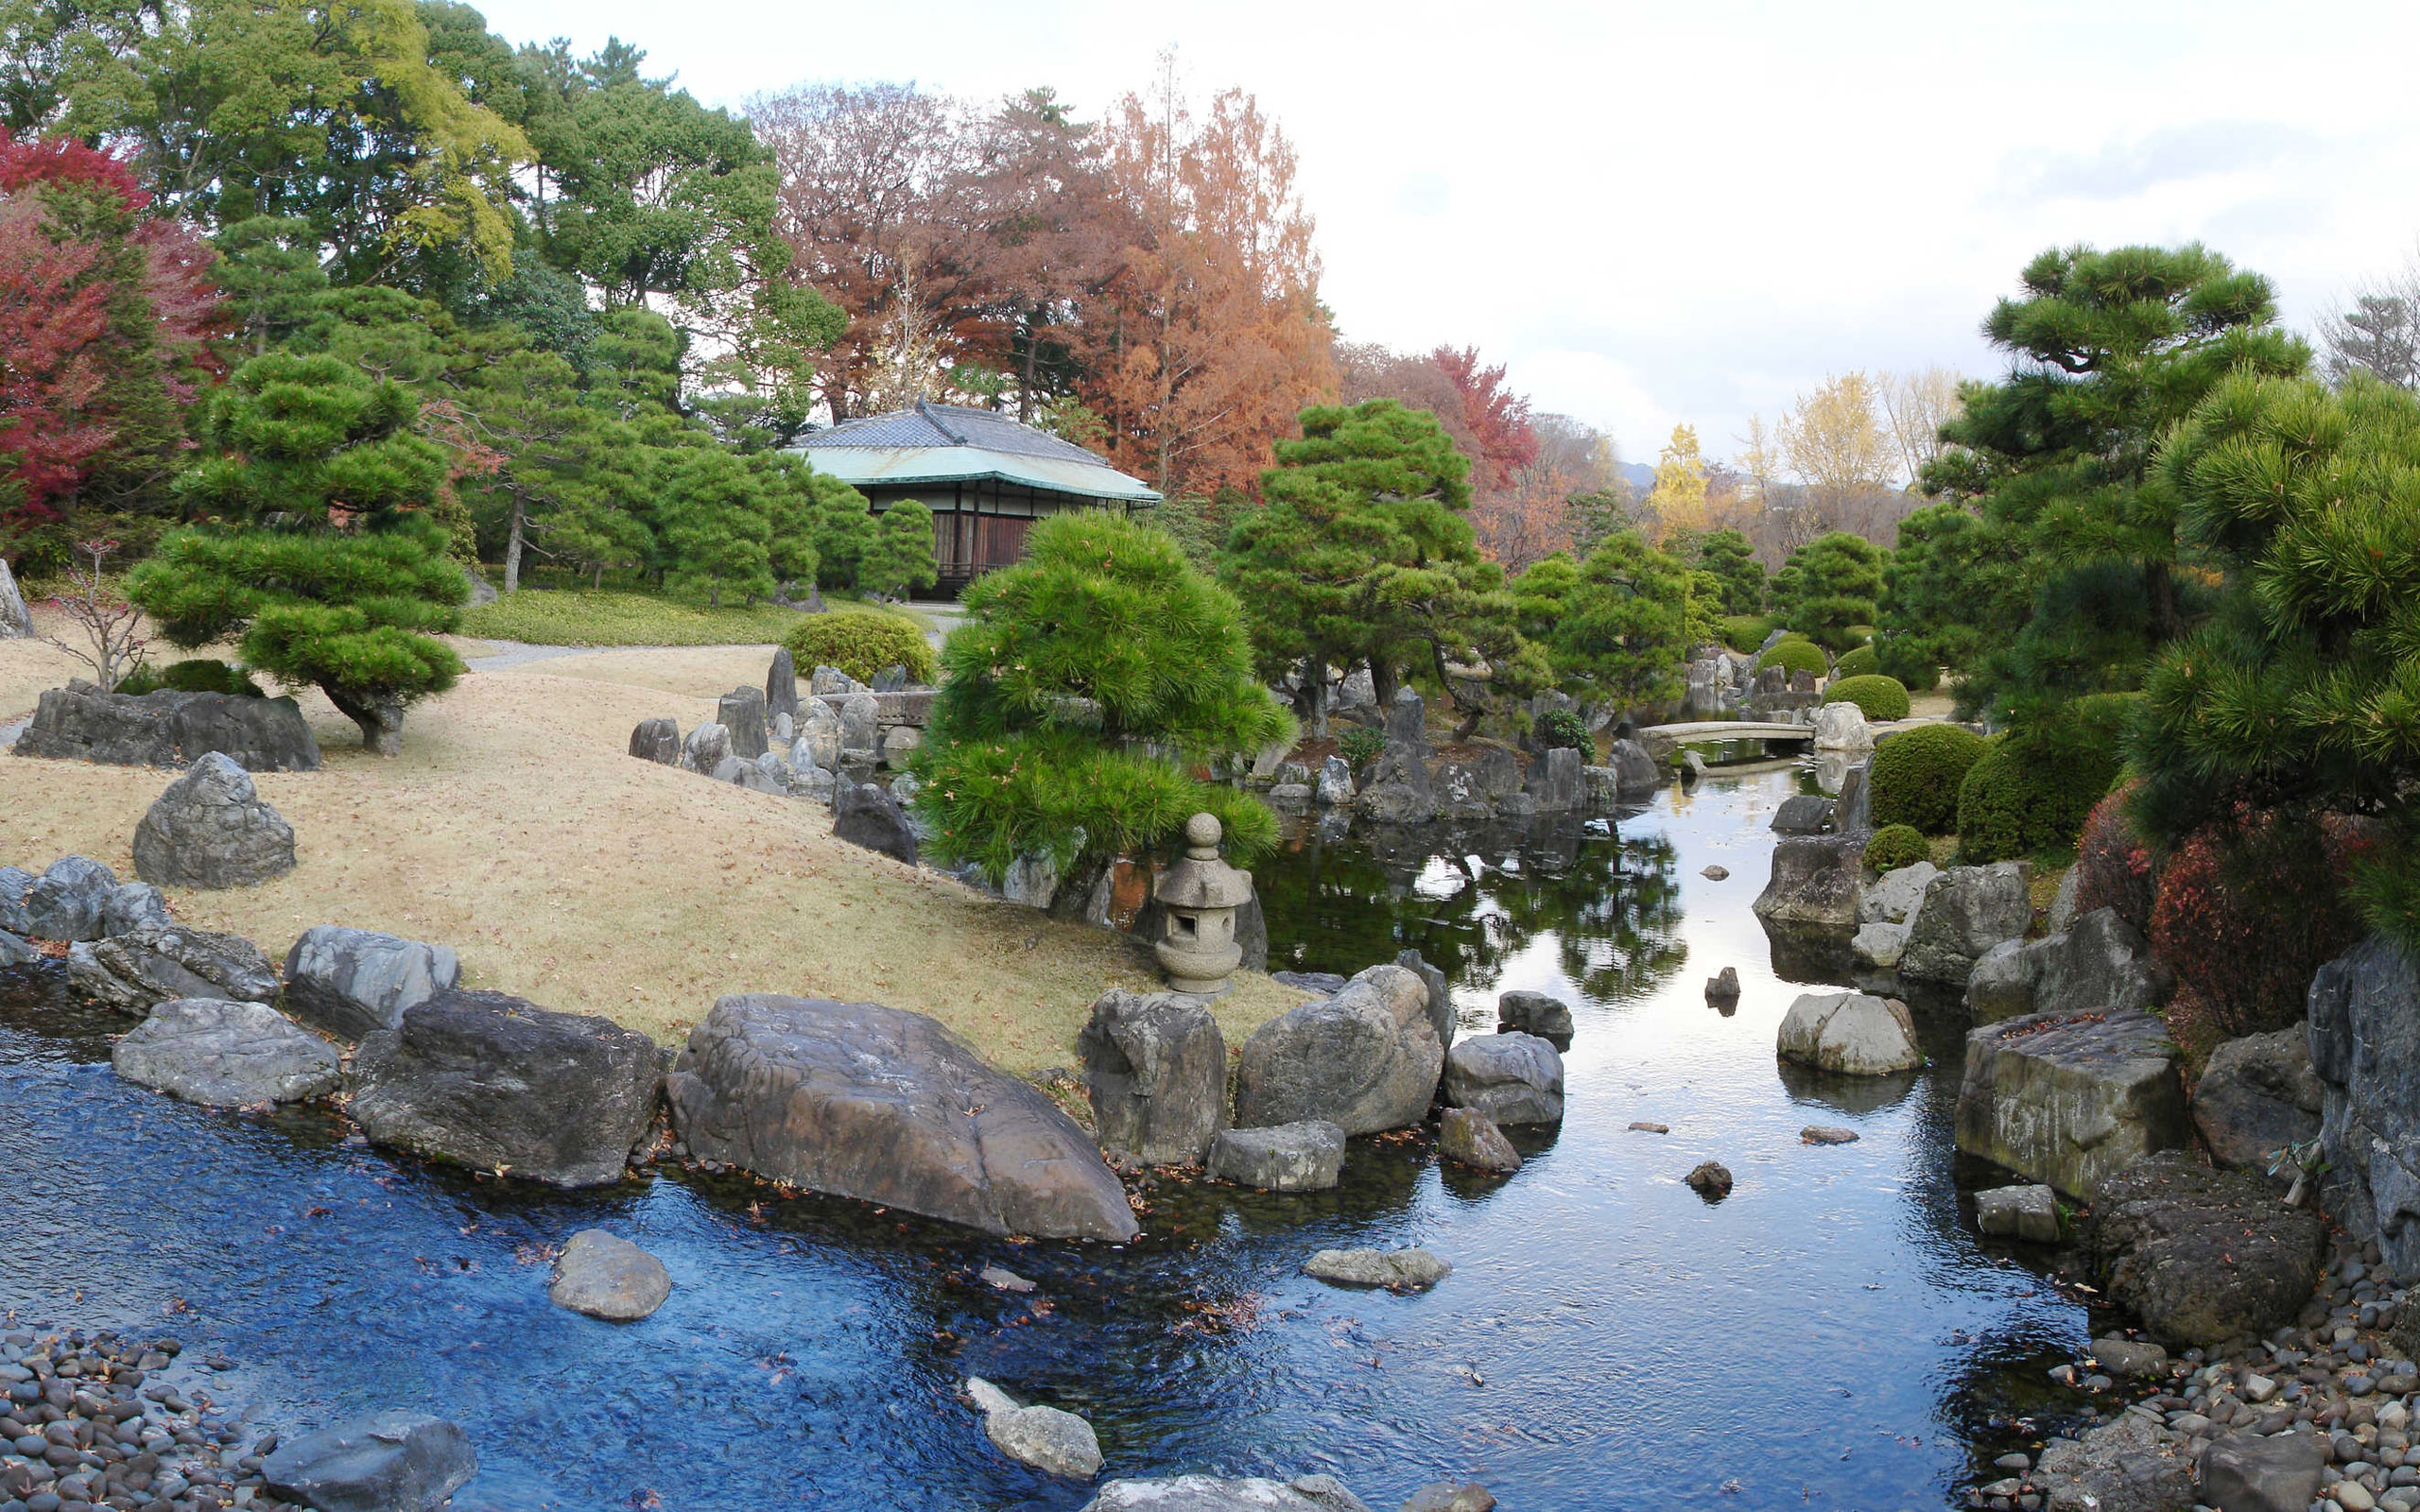 Забронировать столик в японском саду. Киото Япония парк камней. Сады Киото Япония. Парк камней сад камней Япония. Парк камней в Киото.